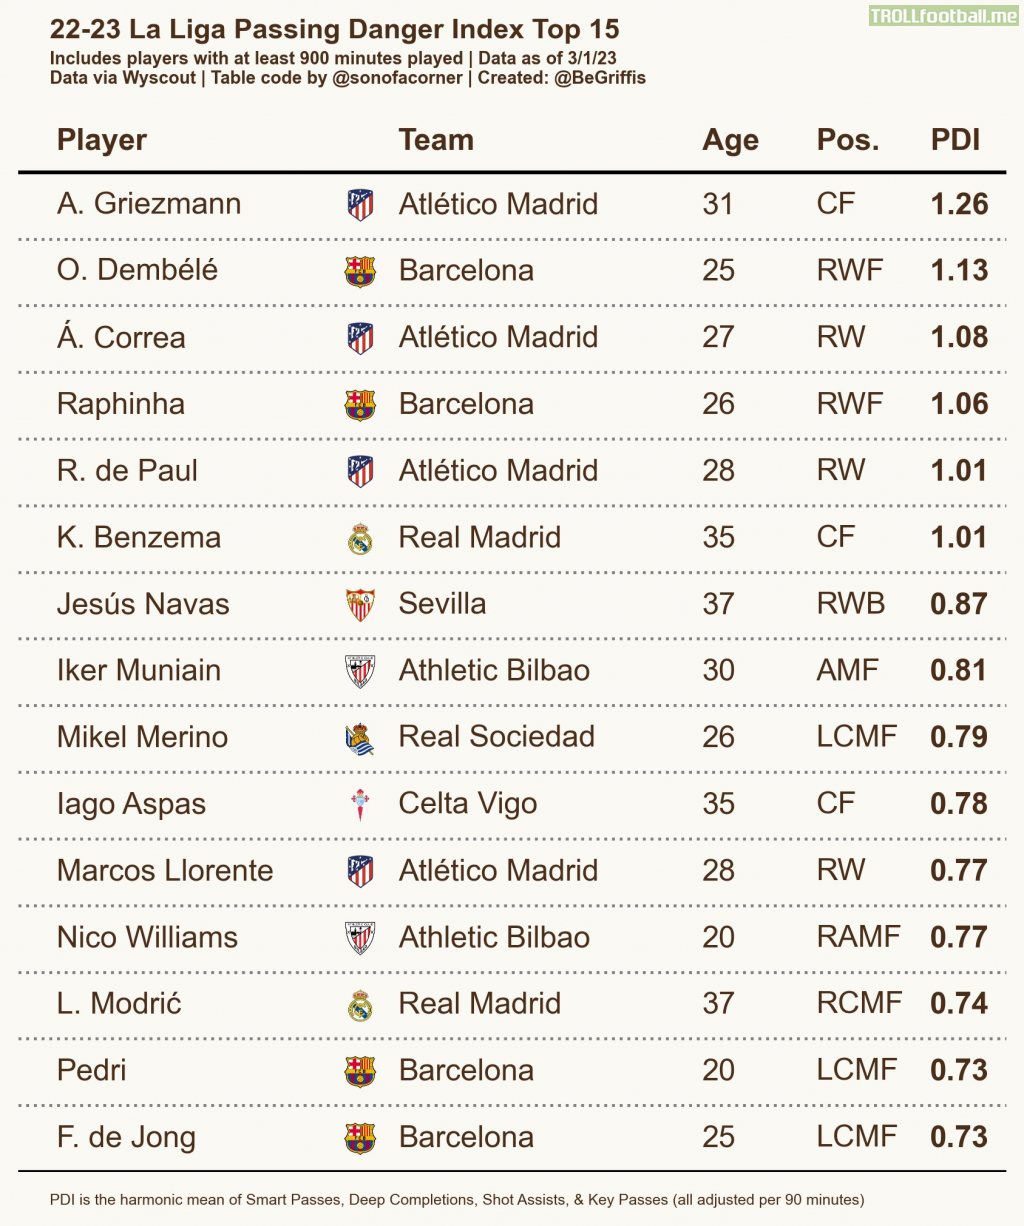 La Liga's most dangerous passers by Passing Danger Index